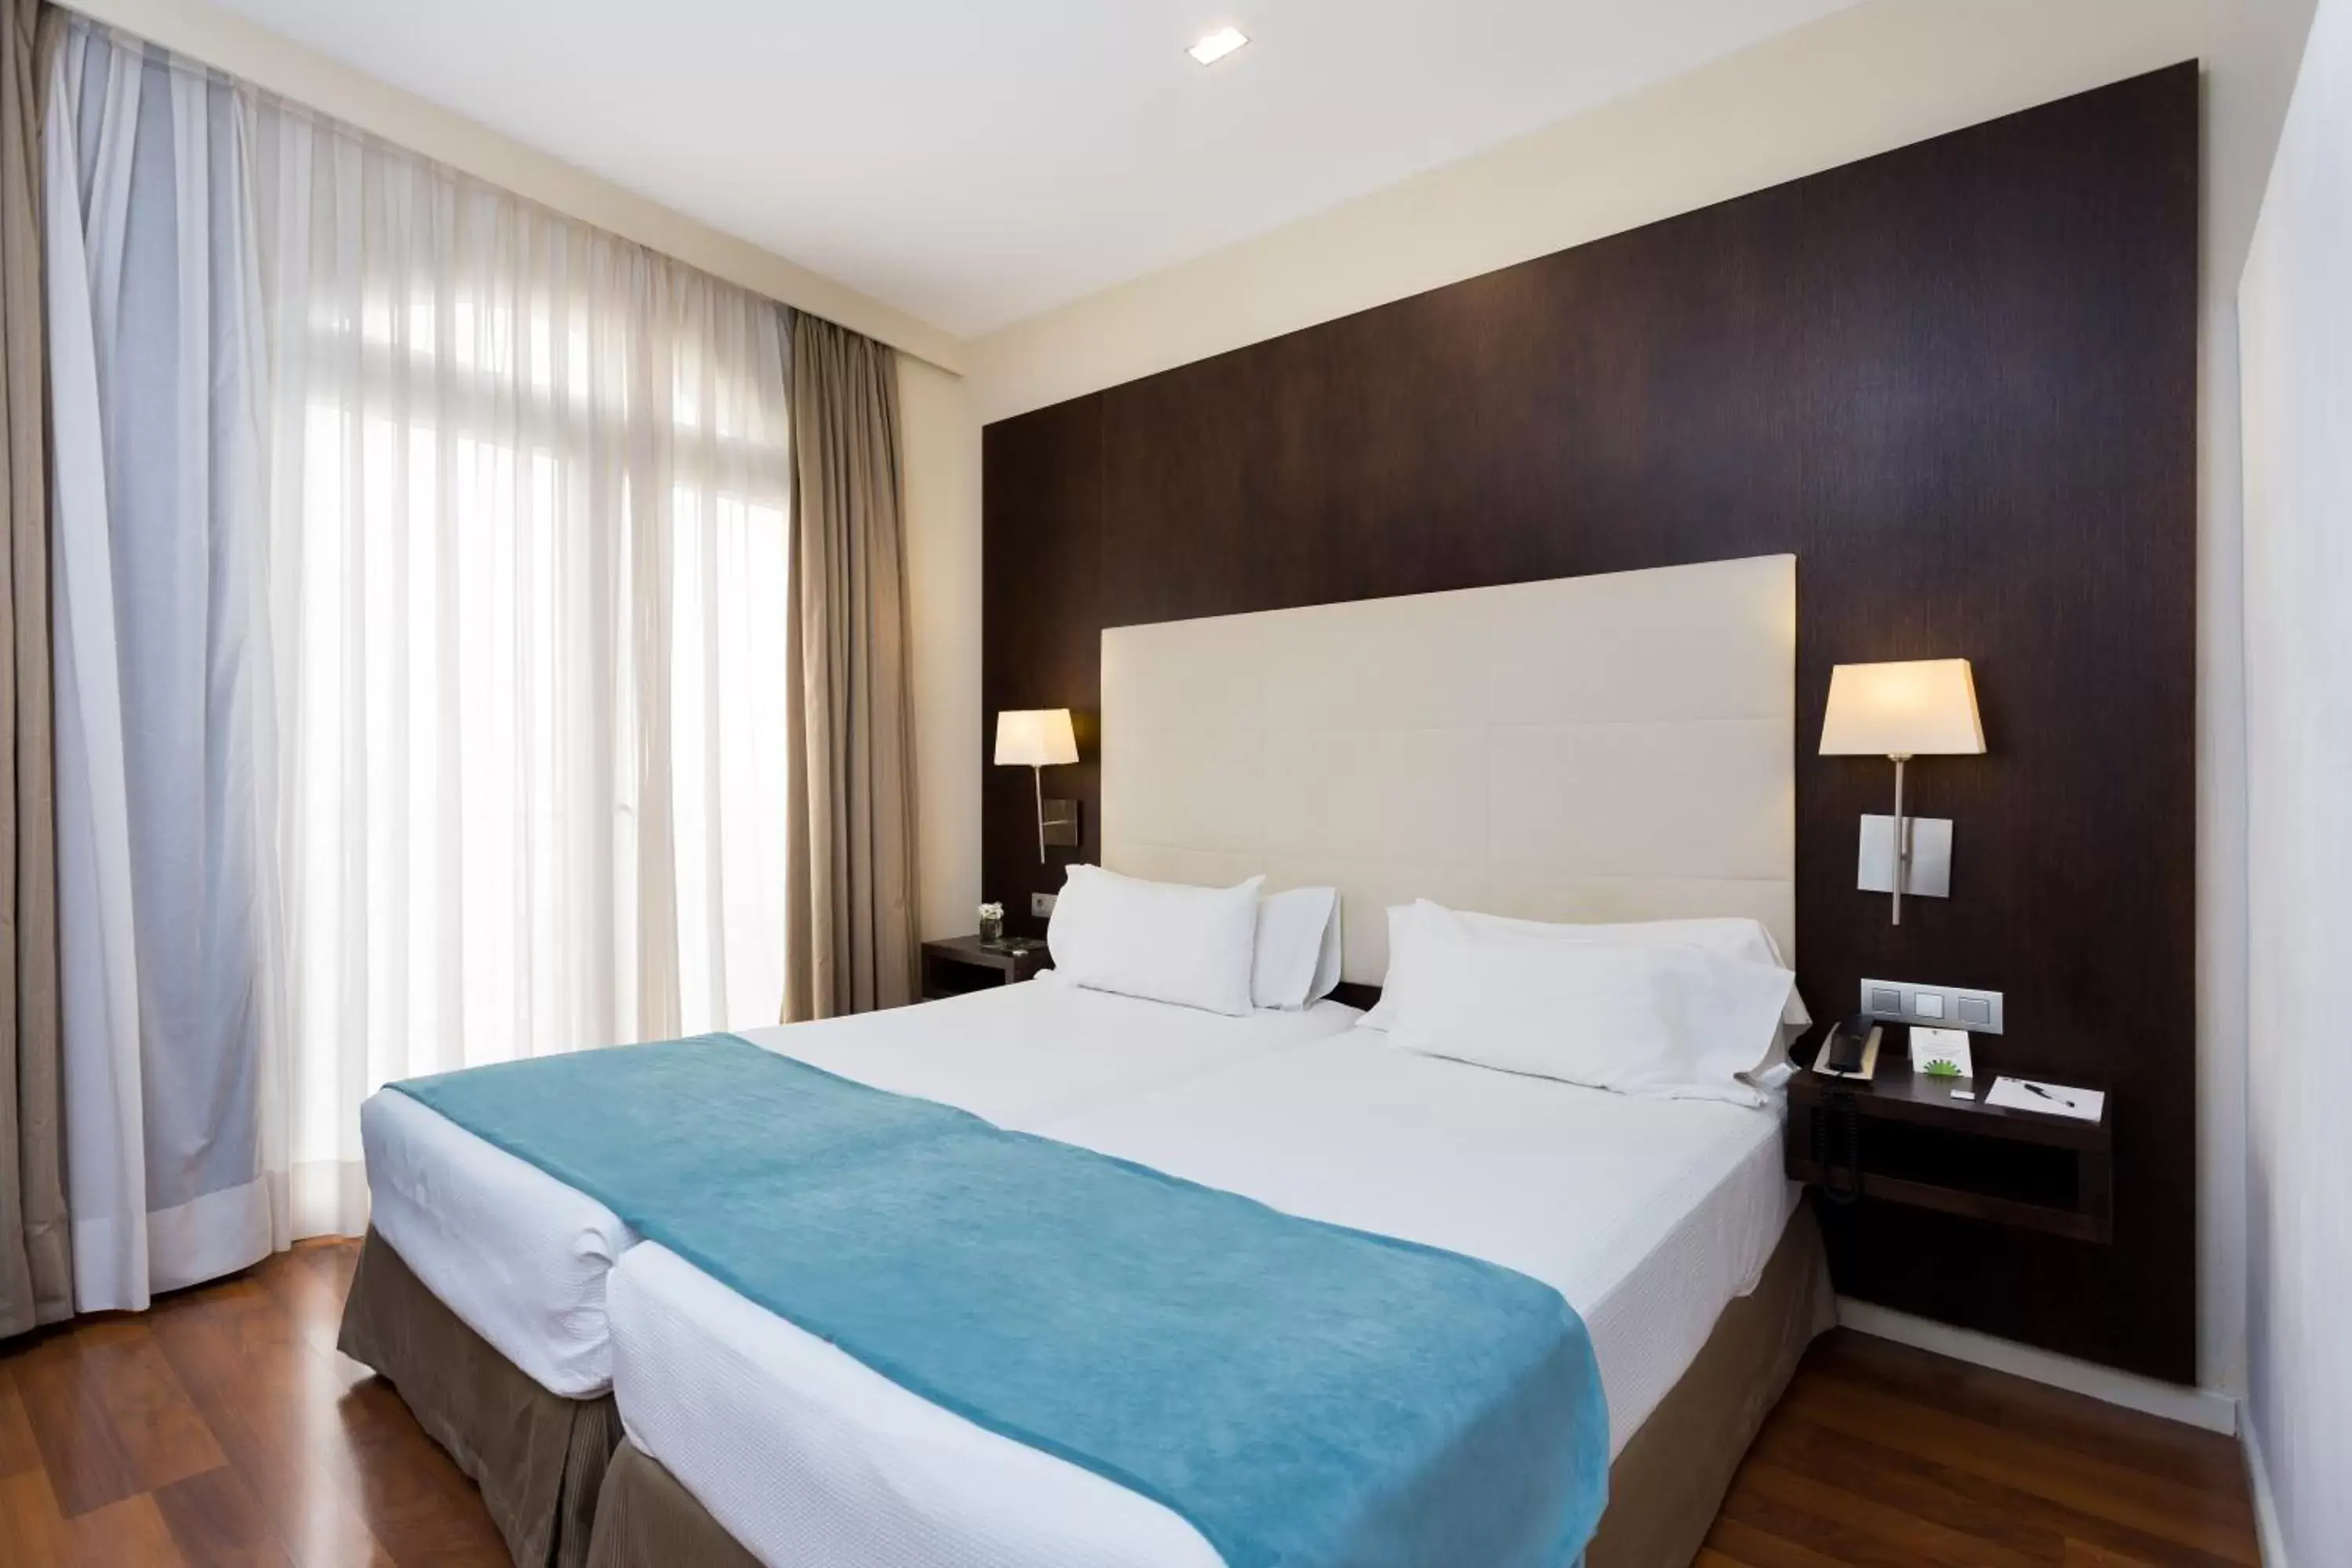 Bedroom, Bed in Hotel Taburiente S.C.Tenerife